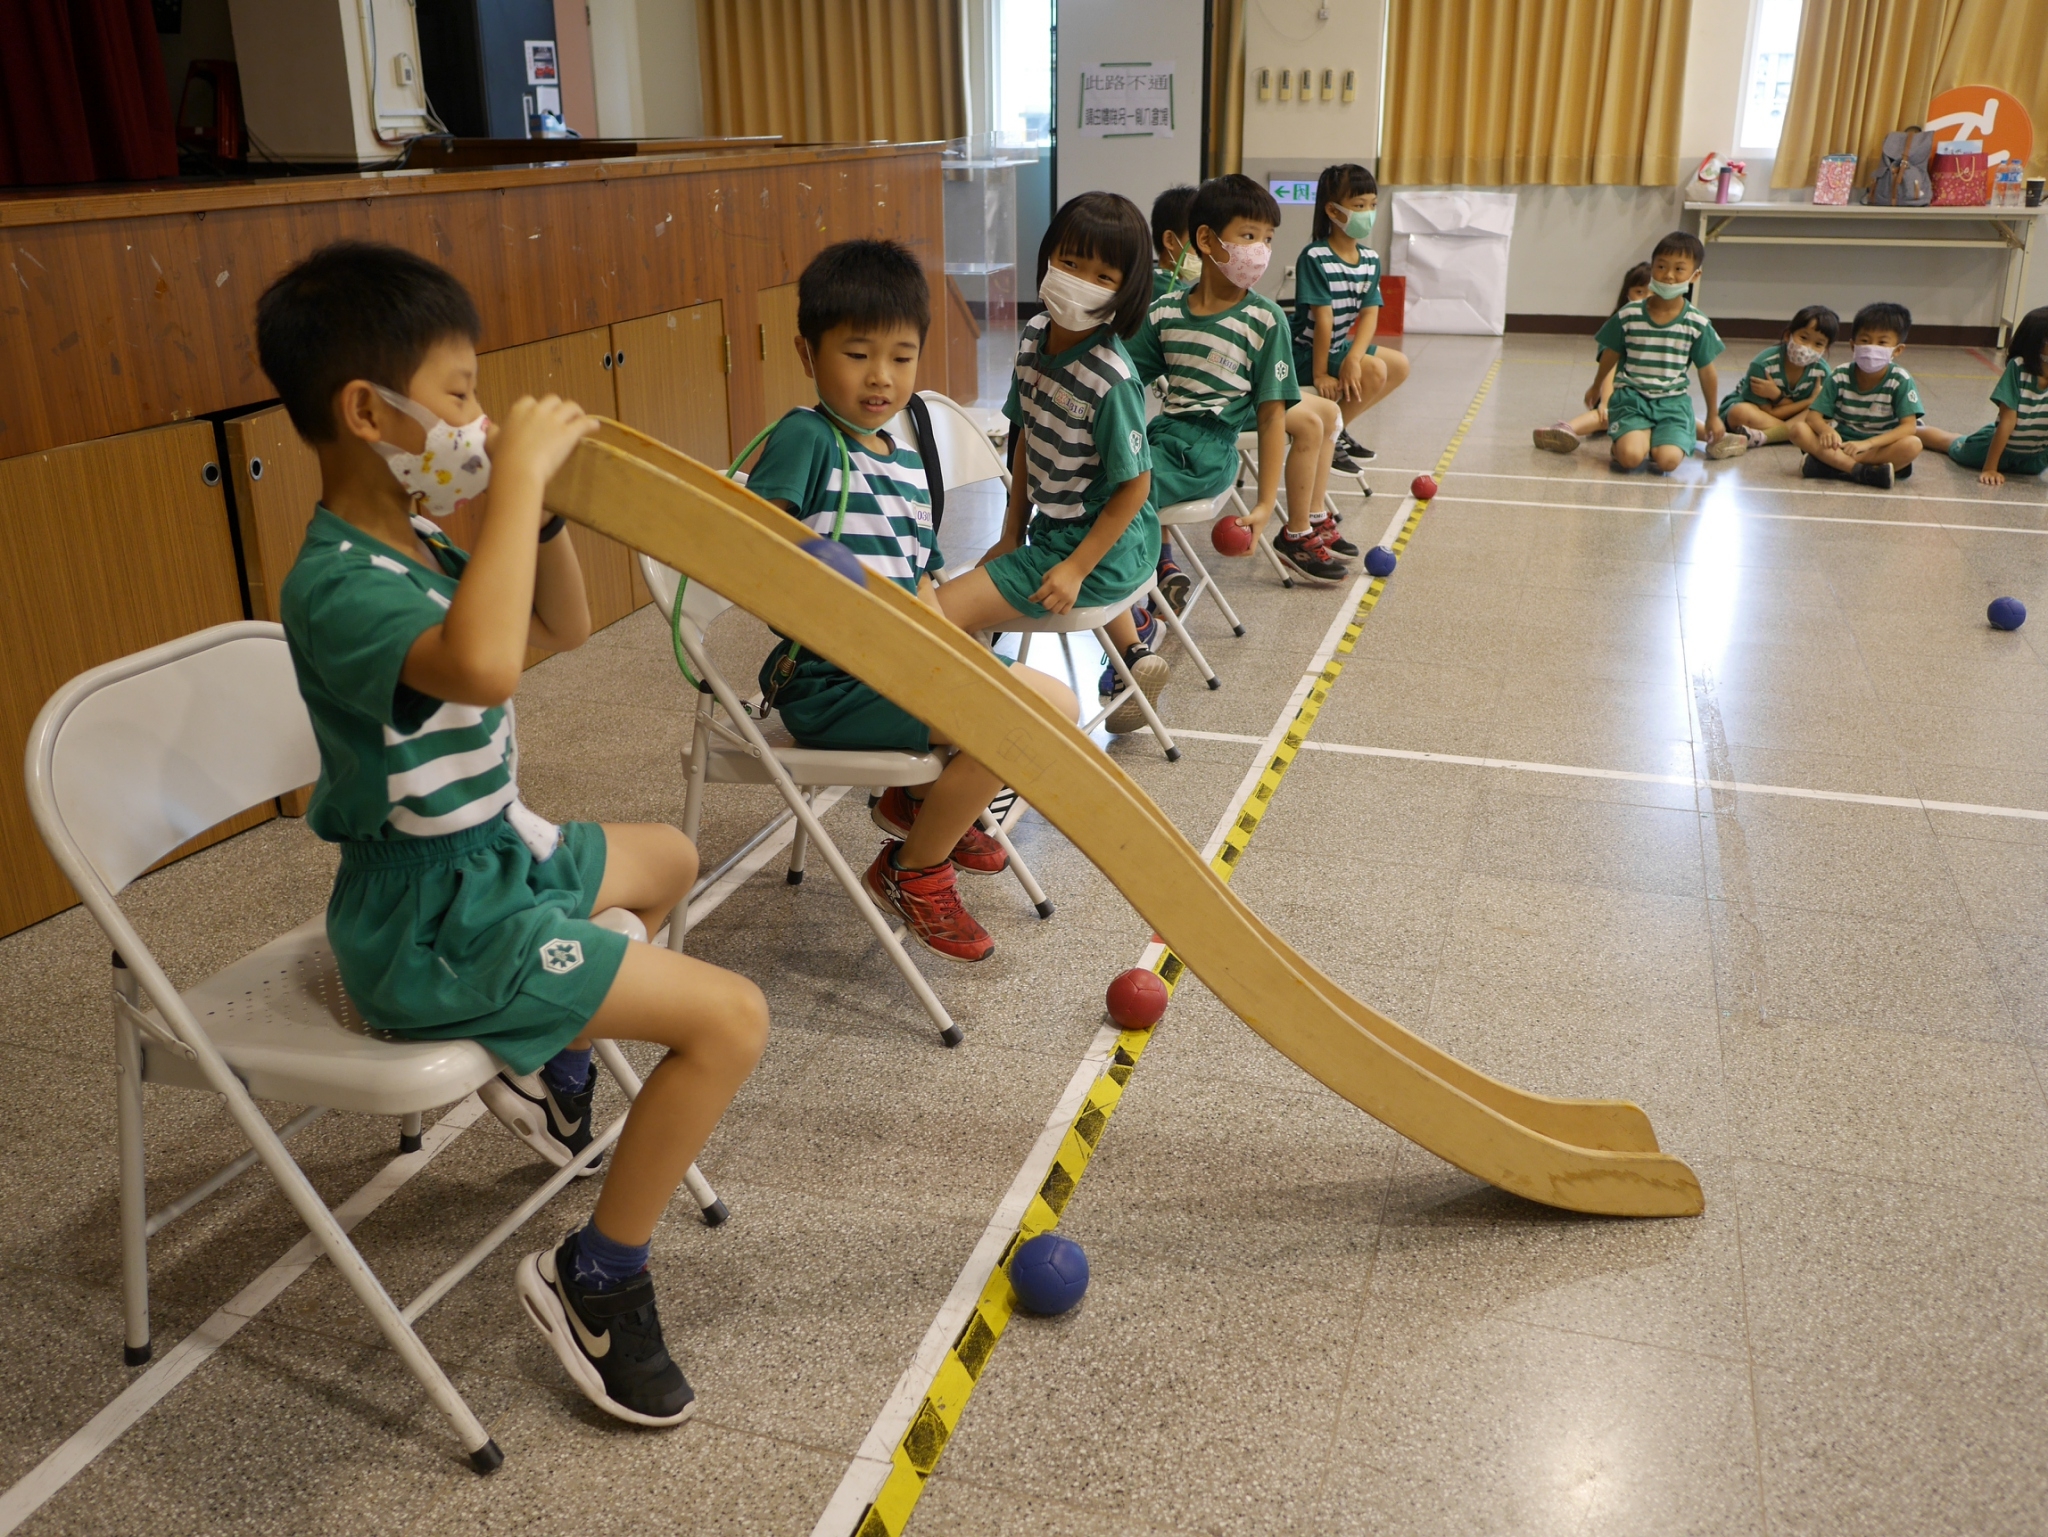 淡水國小同學練習地板滾球